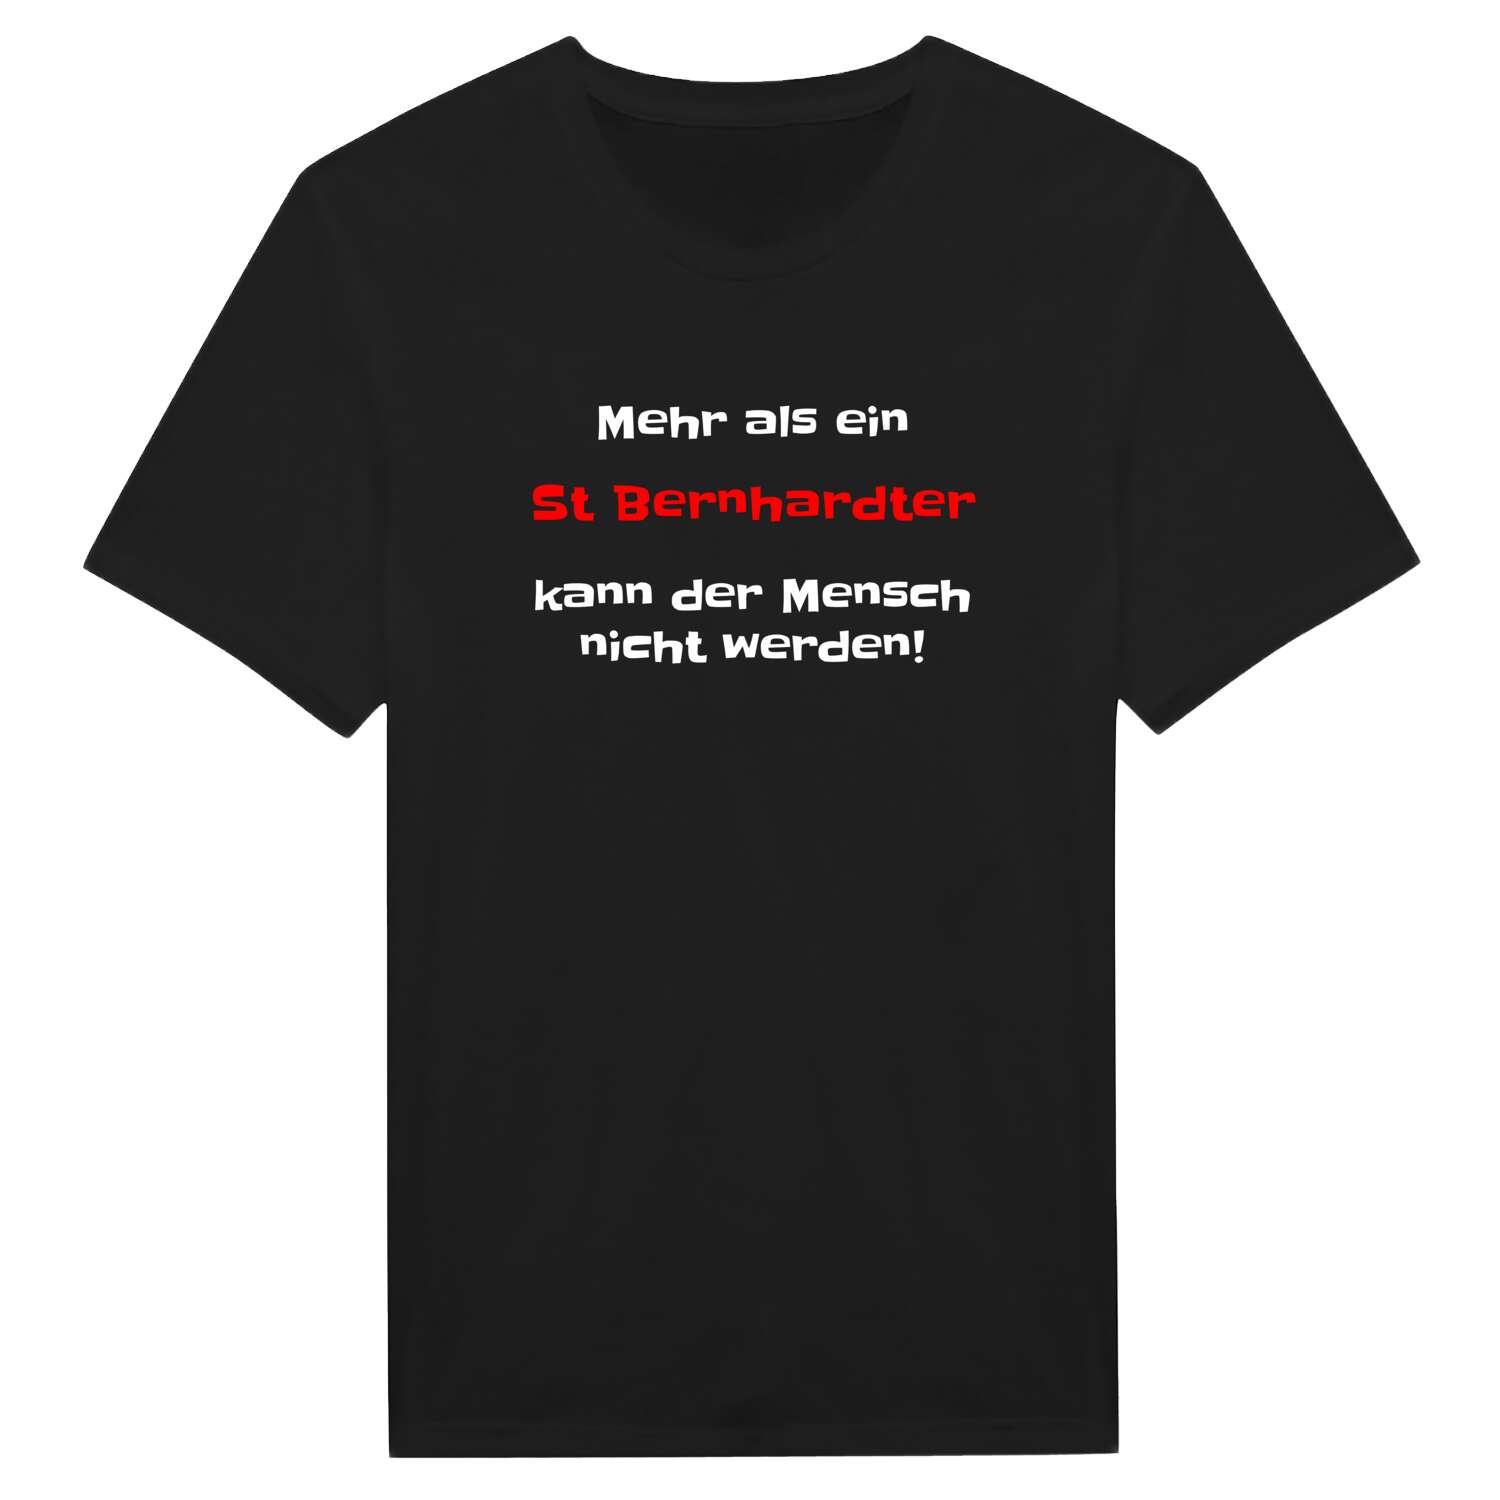 St Bernhardt T-Shirt »Mehr als ein«